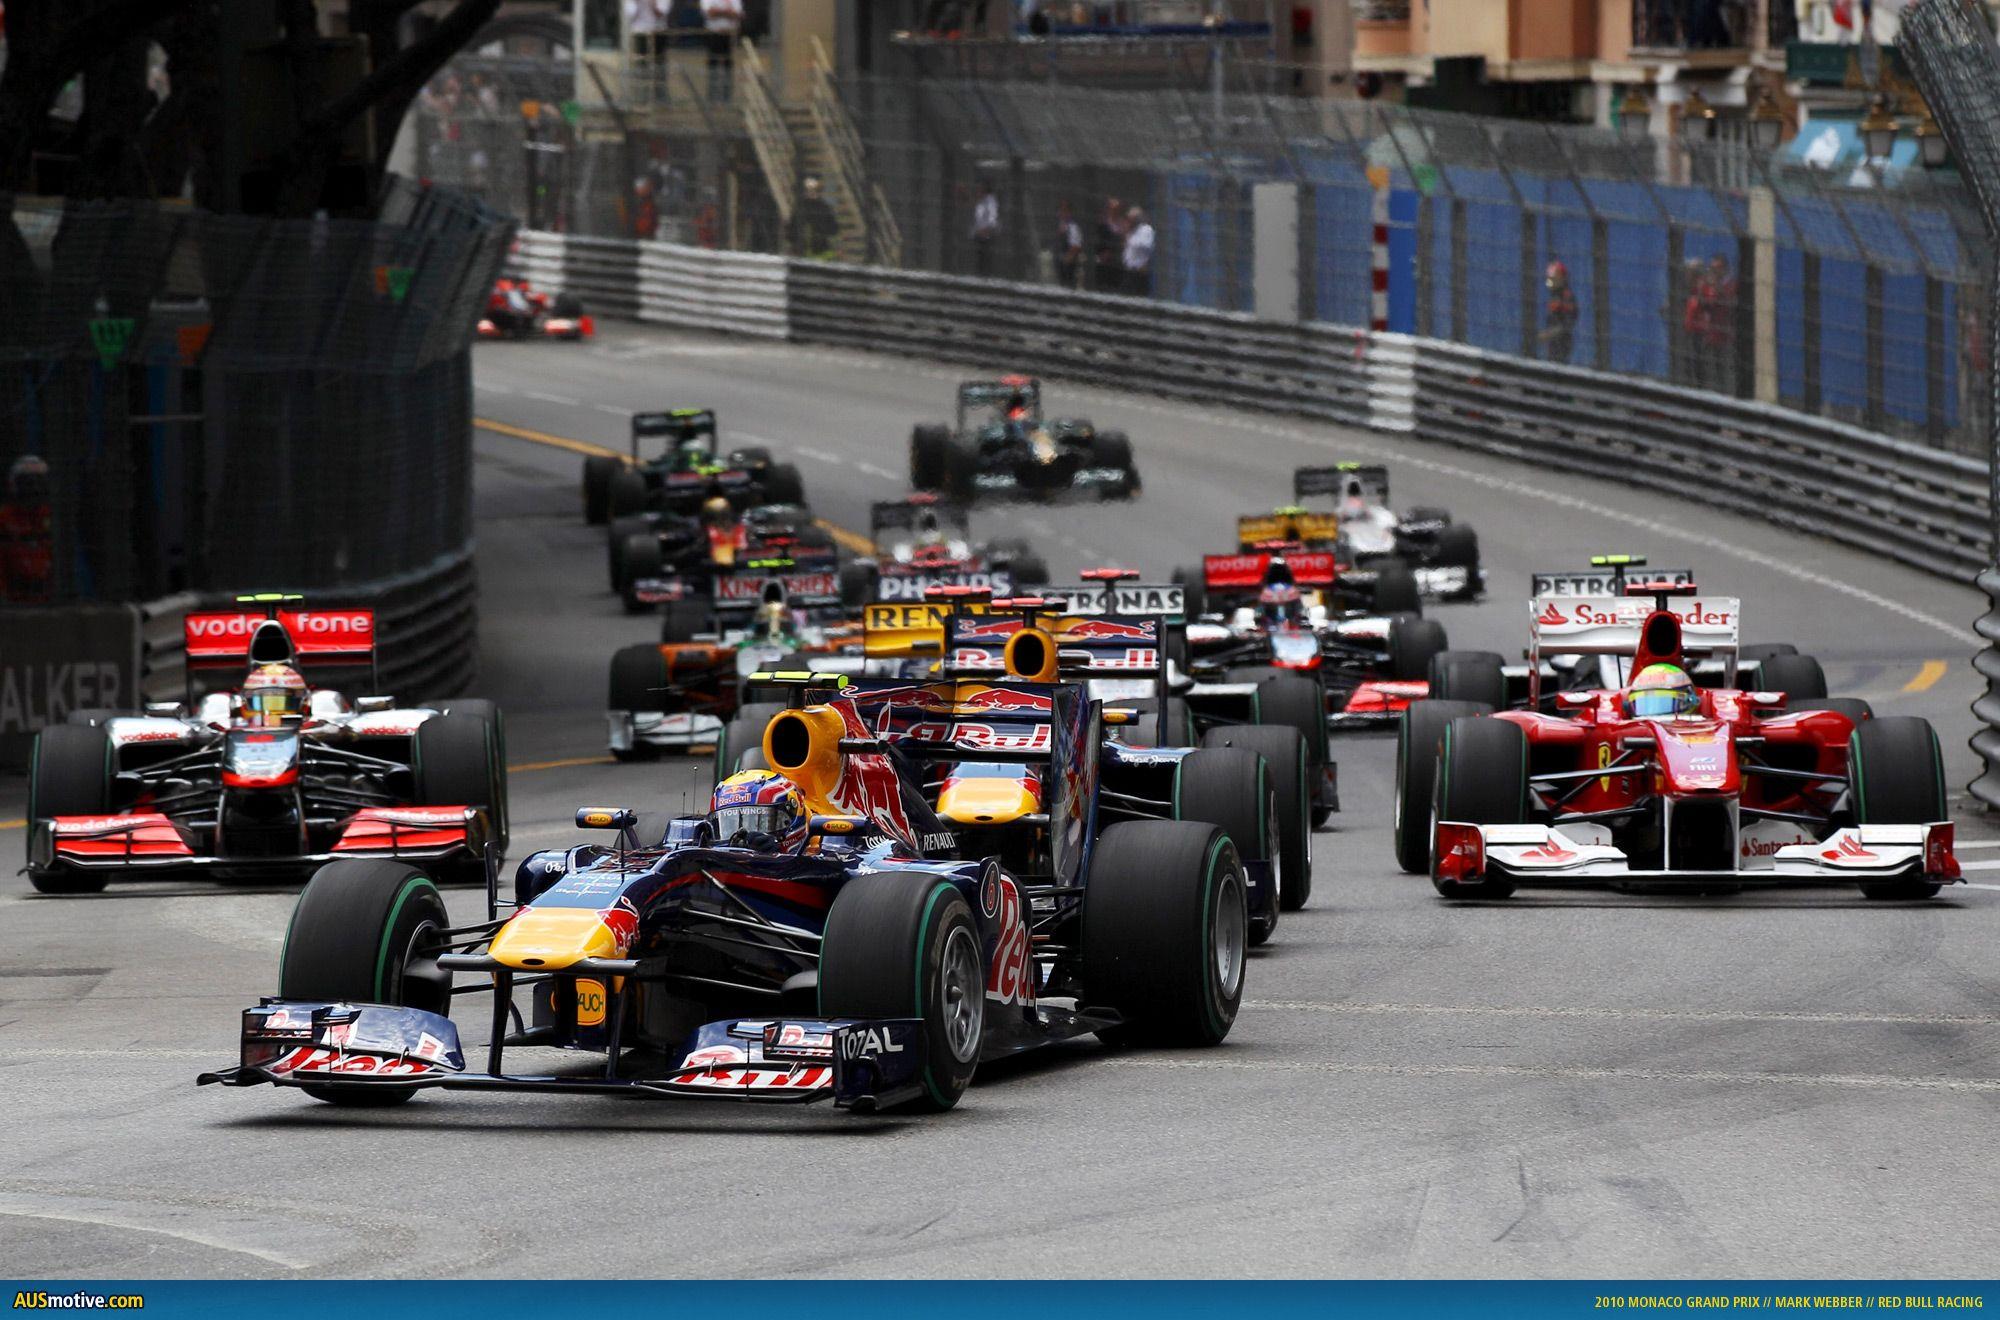 AUSmotive.com 2010 Monaco Grand Prix in picture